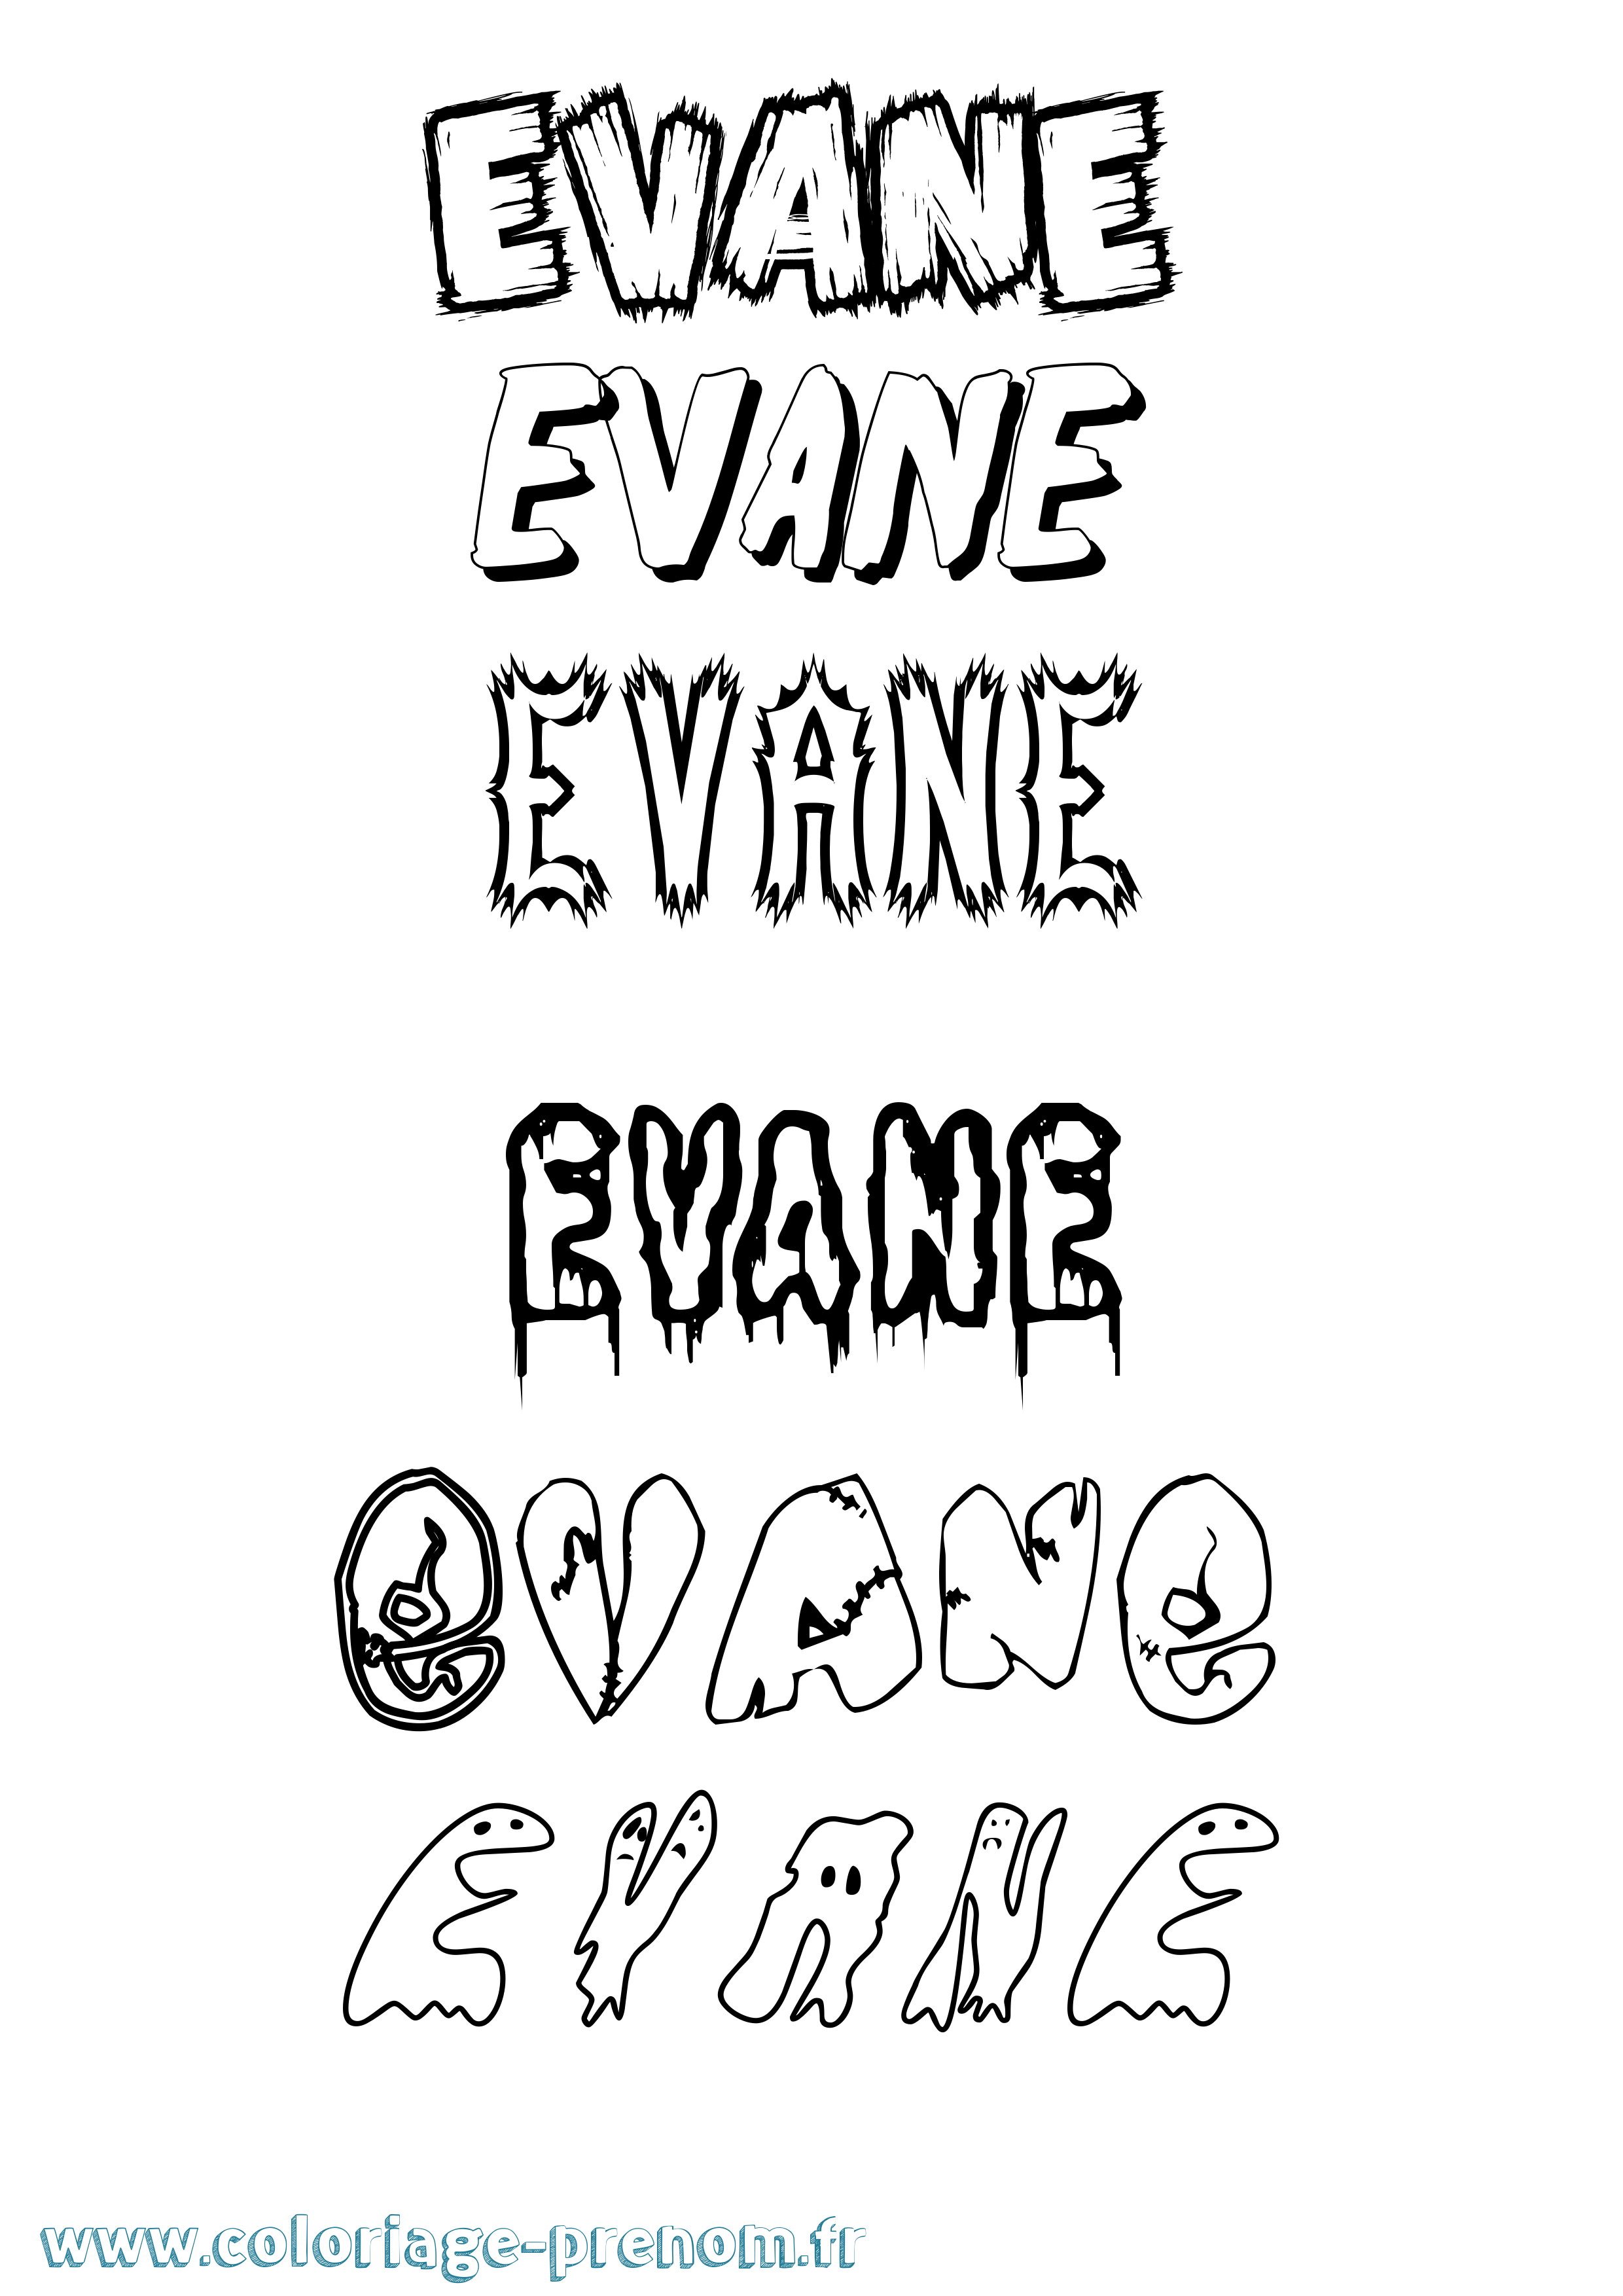 Coloriage prénom Evane Frisson